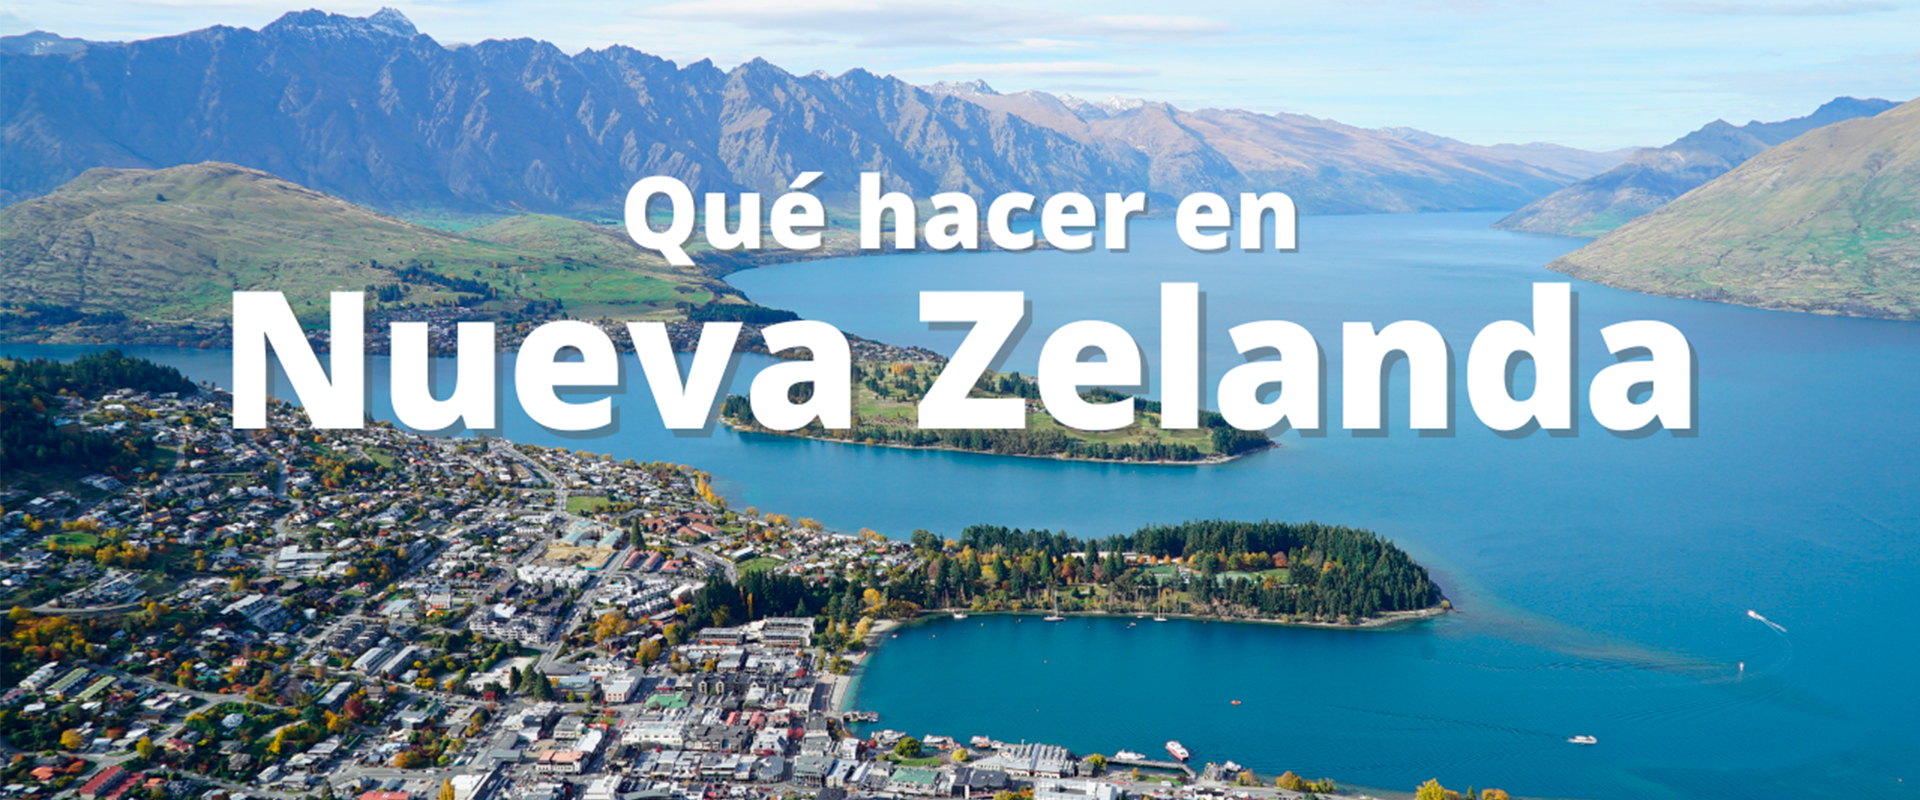 5 Cosas que hacer en Nueva Zelanda